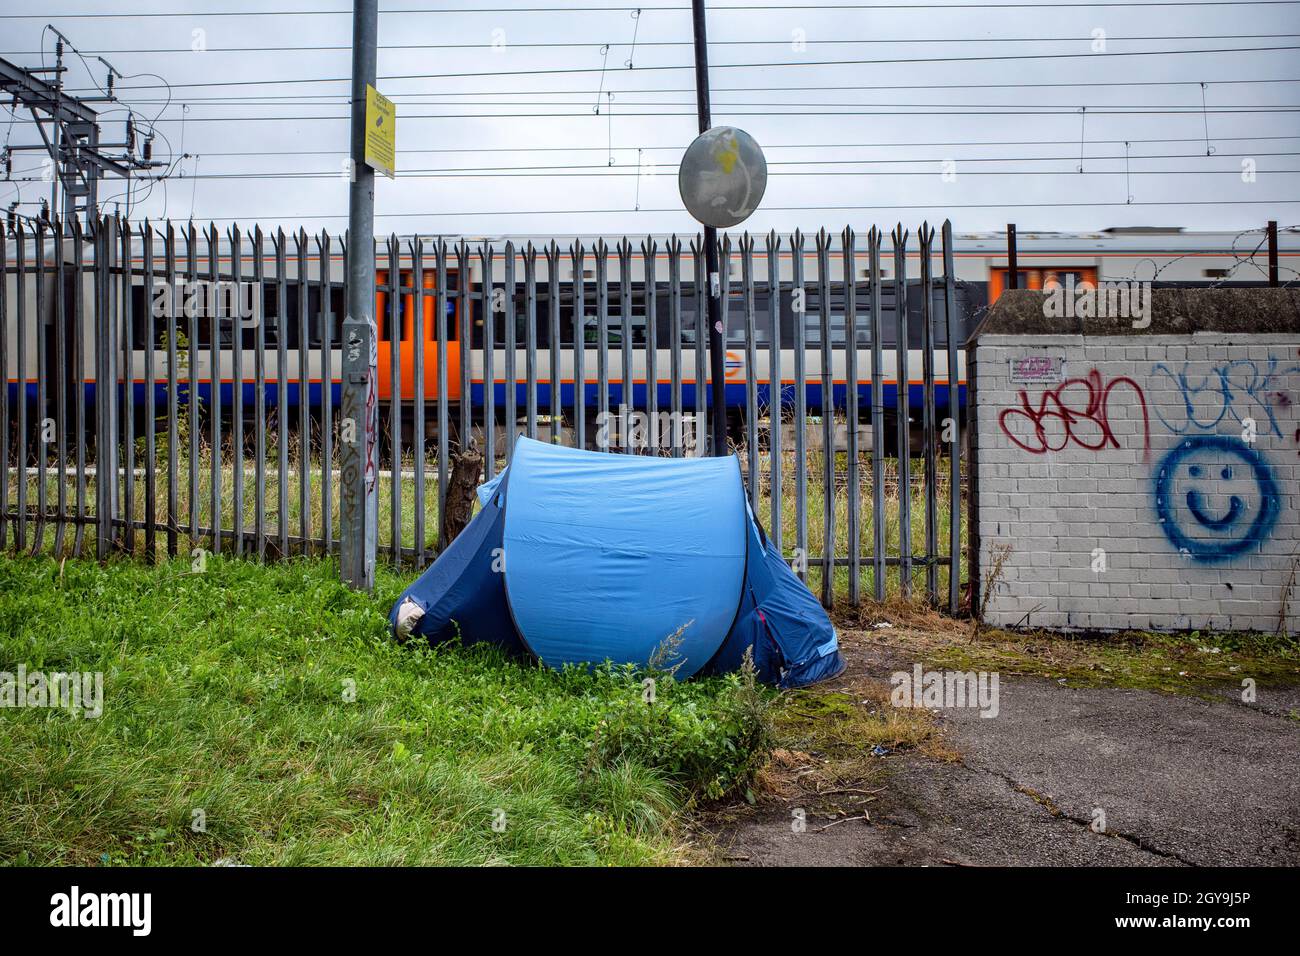 7 ottobre 2021, Kings Cross, Londra, Inghilterra, una persona senza tetto piazzerà una tenda sul terreno di scarto accanto alle tracce London Overground Foto Stock